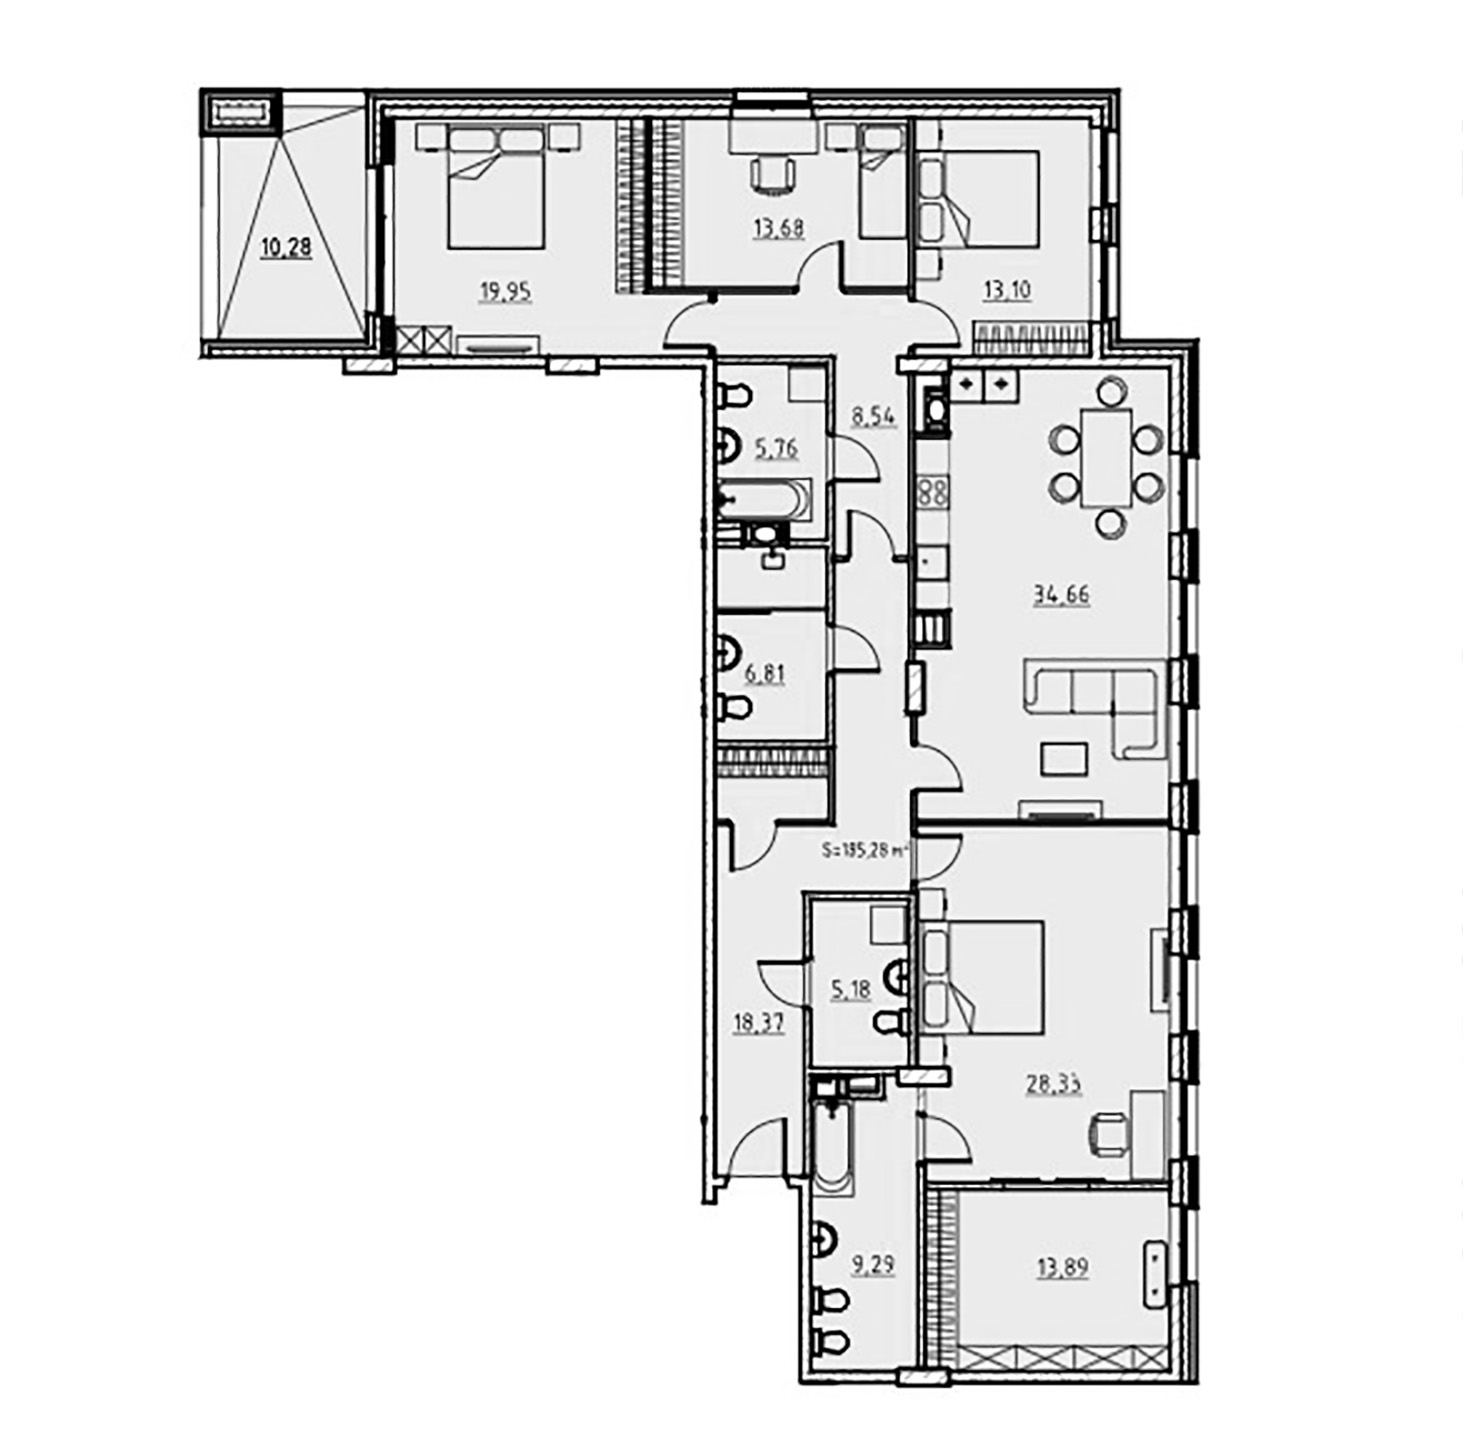 4-комнатная квартира  №52 в Манхэттен: 185.11 м², этаж 4 - купить в Санкт-Петербурге